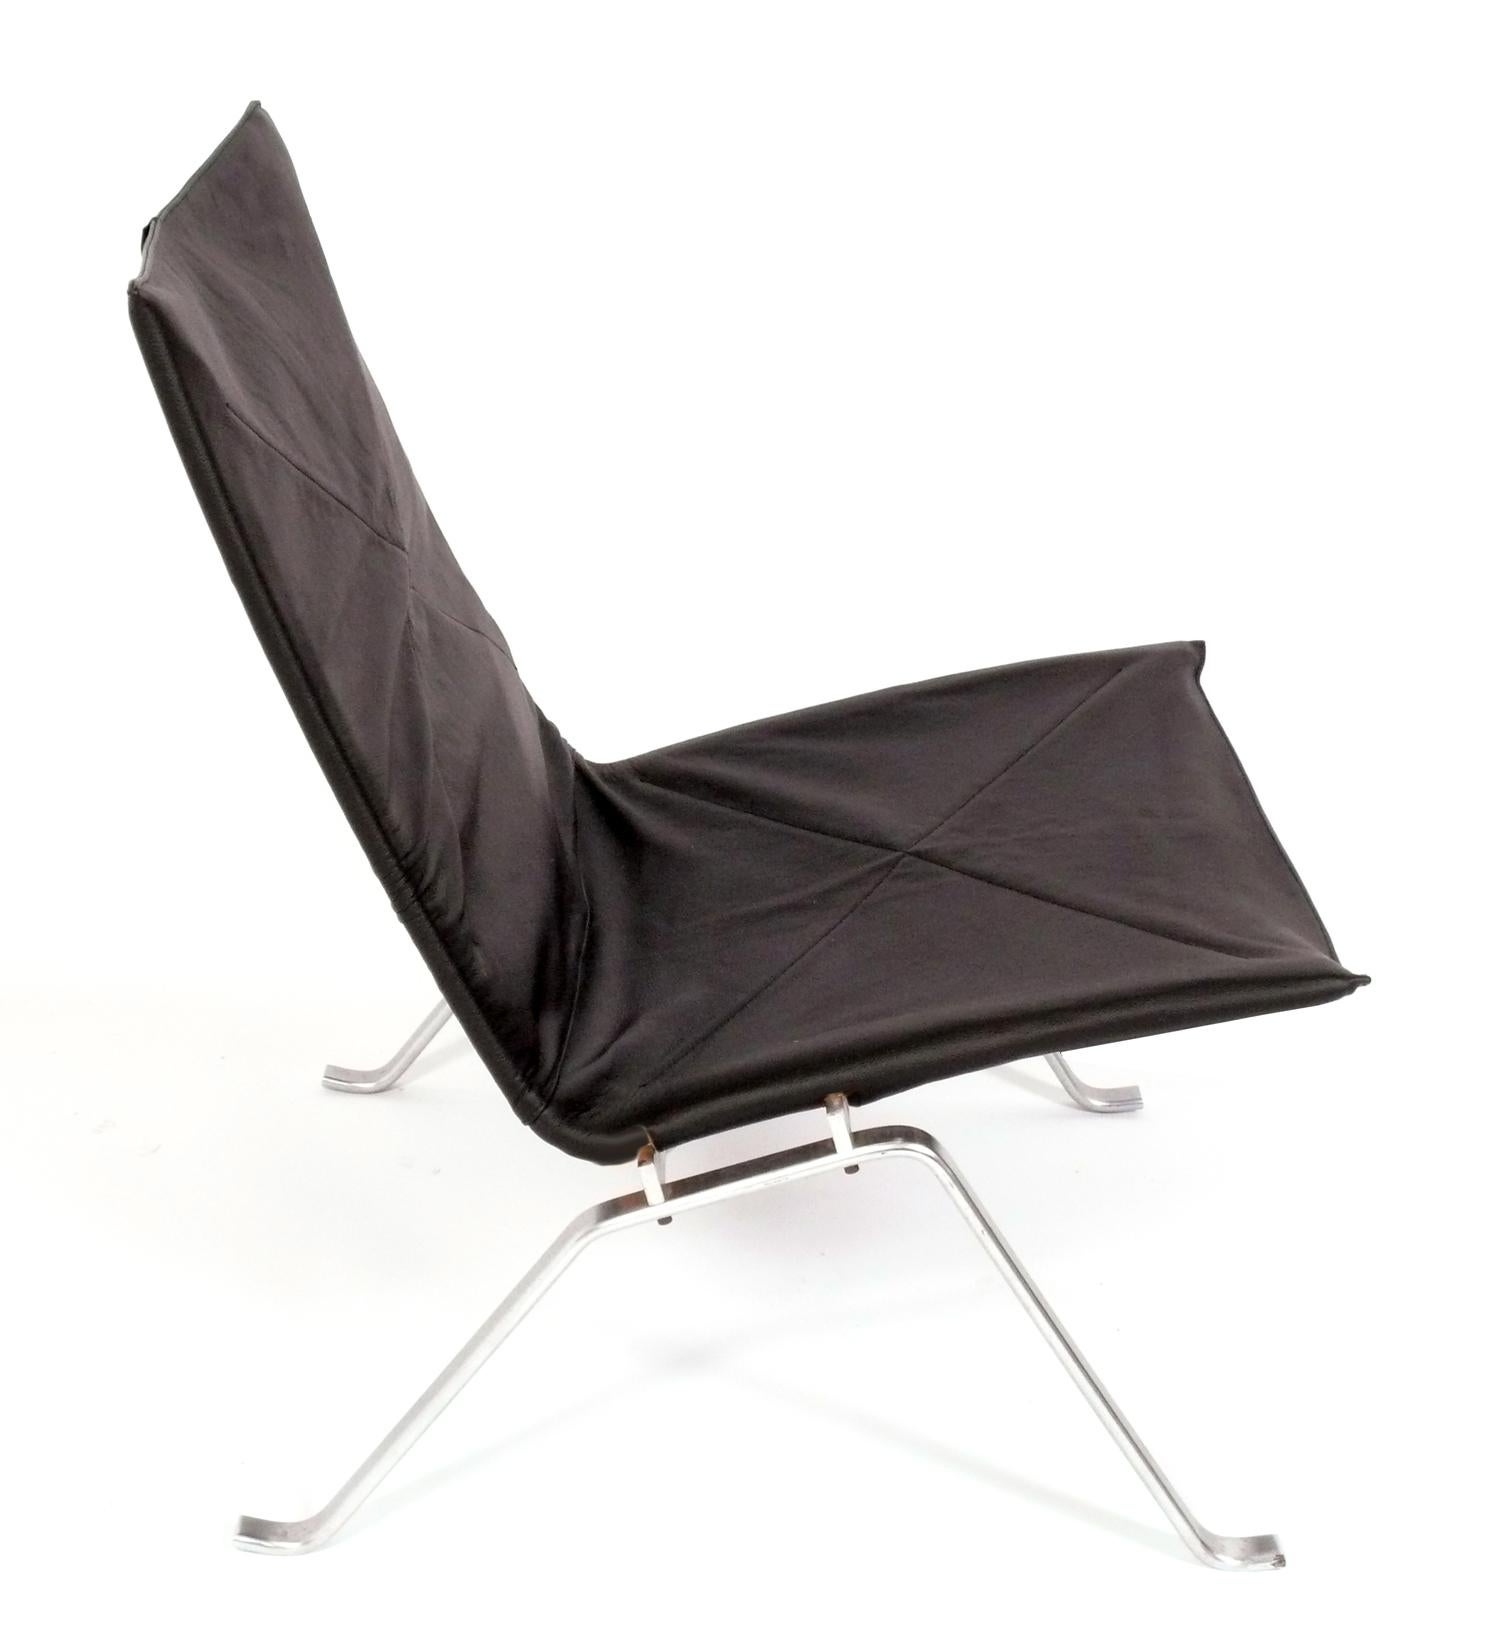 Skulpturaler PK22 Model Lounge Chair, entworfen von Poul Kjaerholm für E Kold Christensen, signiert, Dänemark, ca. 1960er Jahre. Nach Angaben des Anwesens, in dem wir diesen Stuhl erworben haben, wurde der Lederbezug Anfang der 2000er Jahre ersetzt.